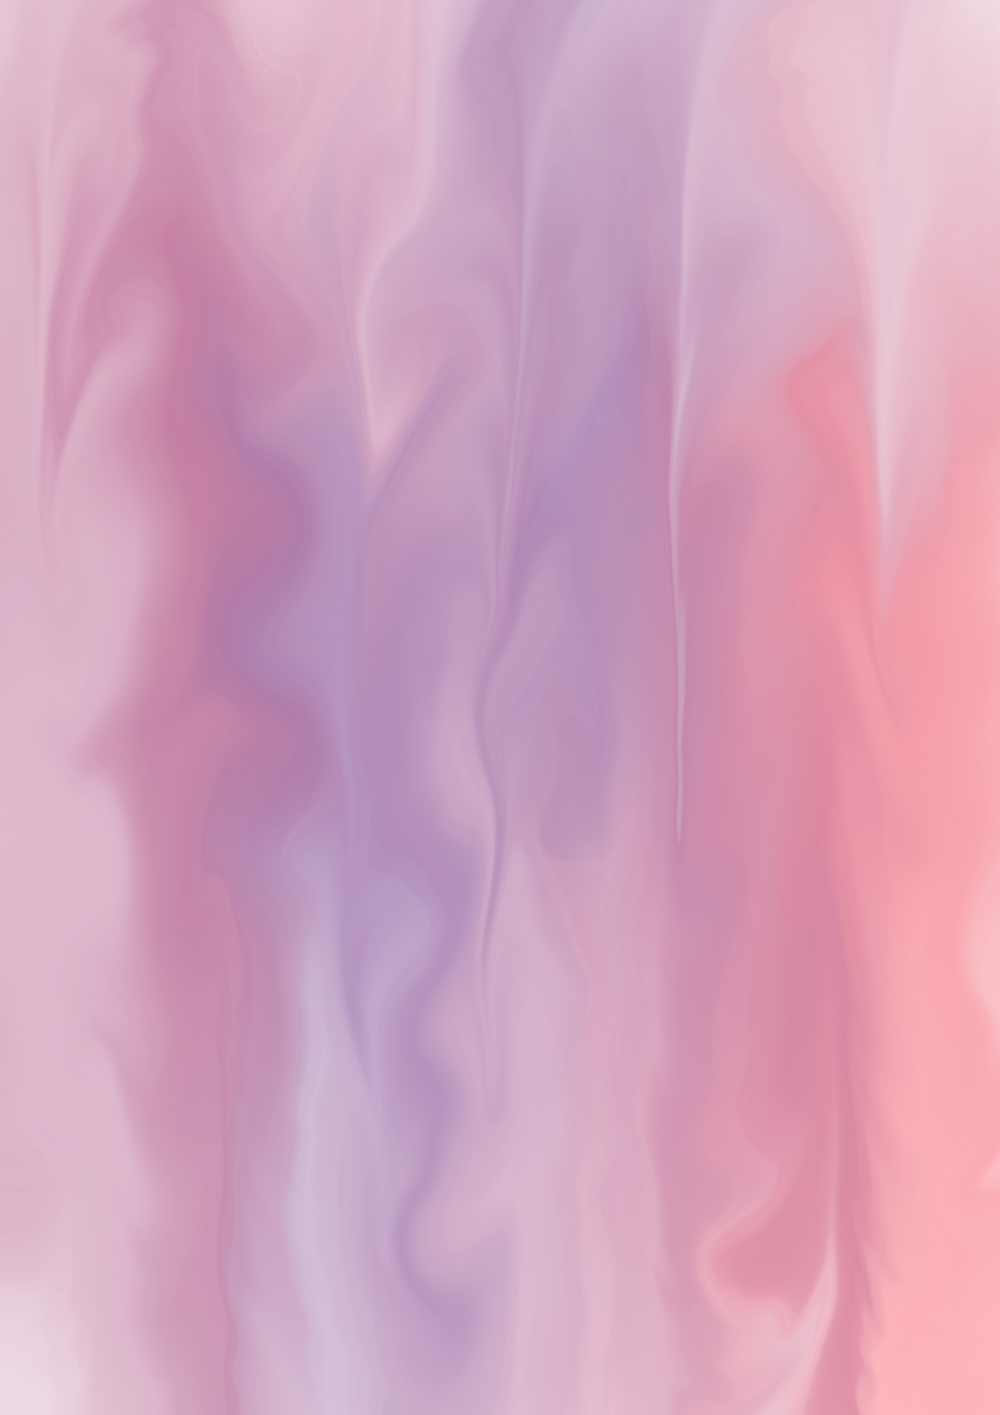 une image floue d’un arrière-plan rose et violet